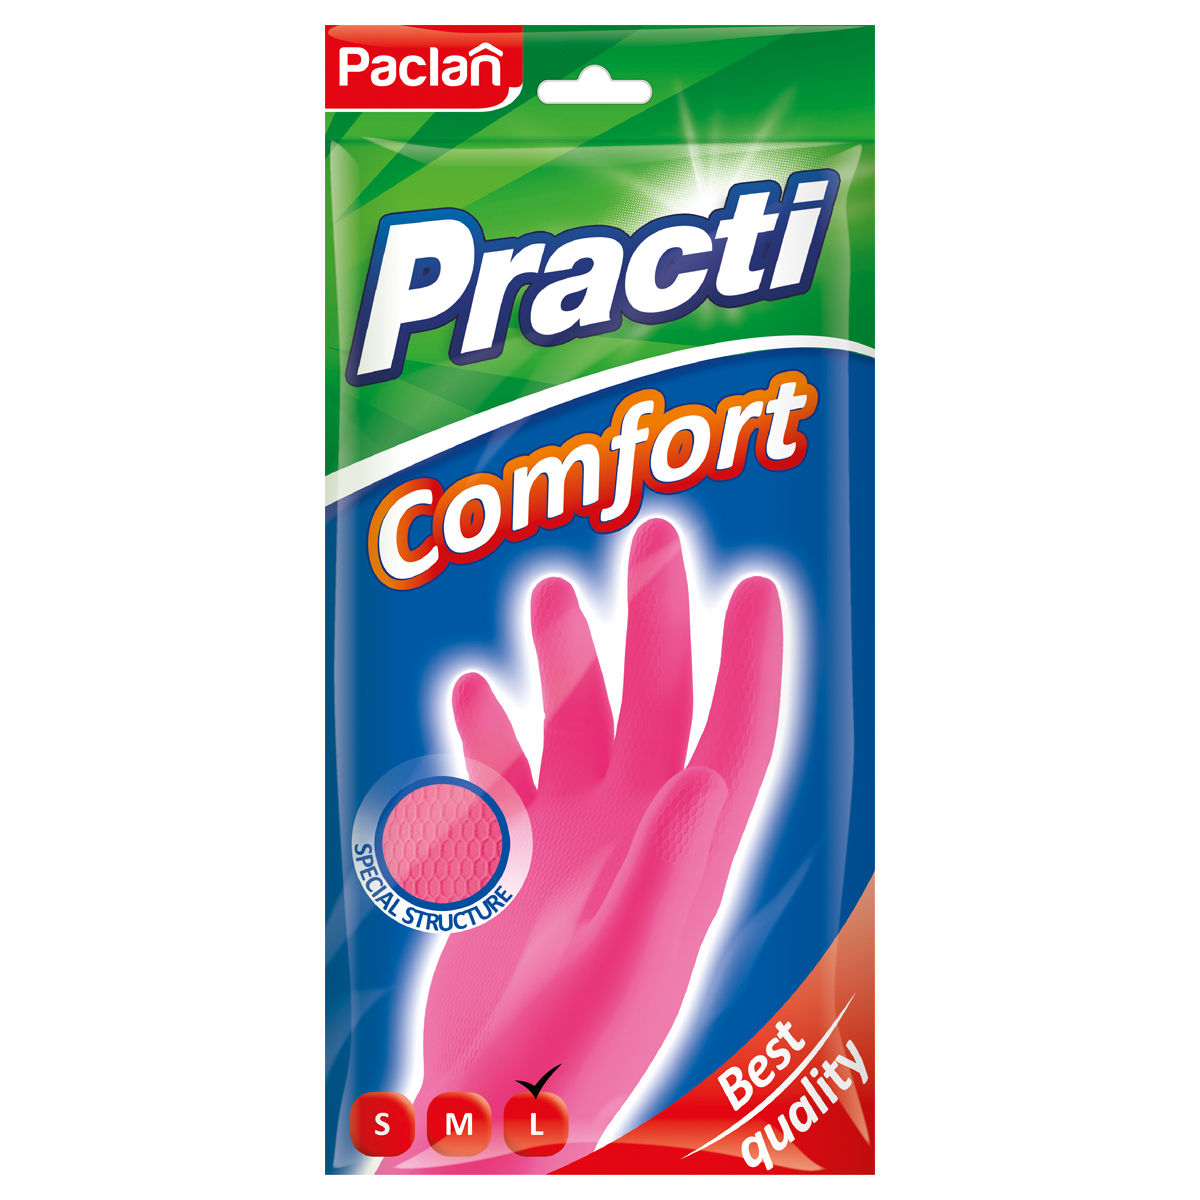 Перчатки резиновые хозяйственные Paclan "Practi. Comfort", разм. L, х/б напыление, розовые, пакет с европодвесом